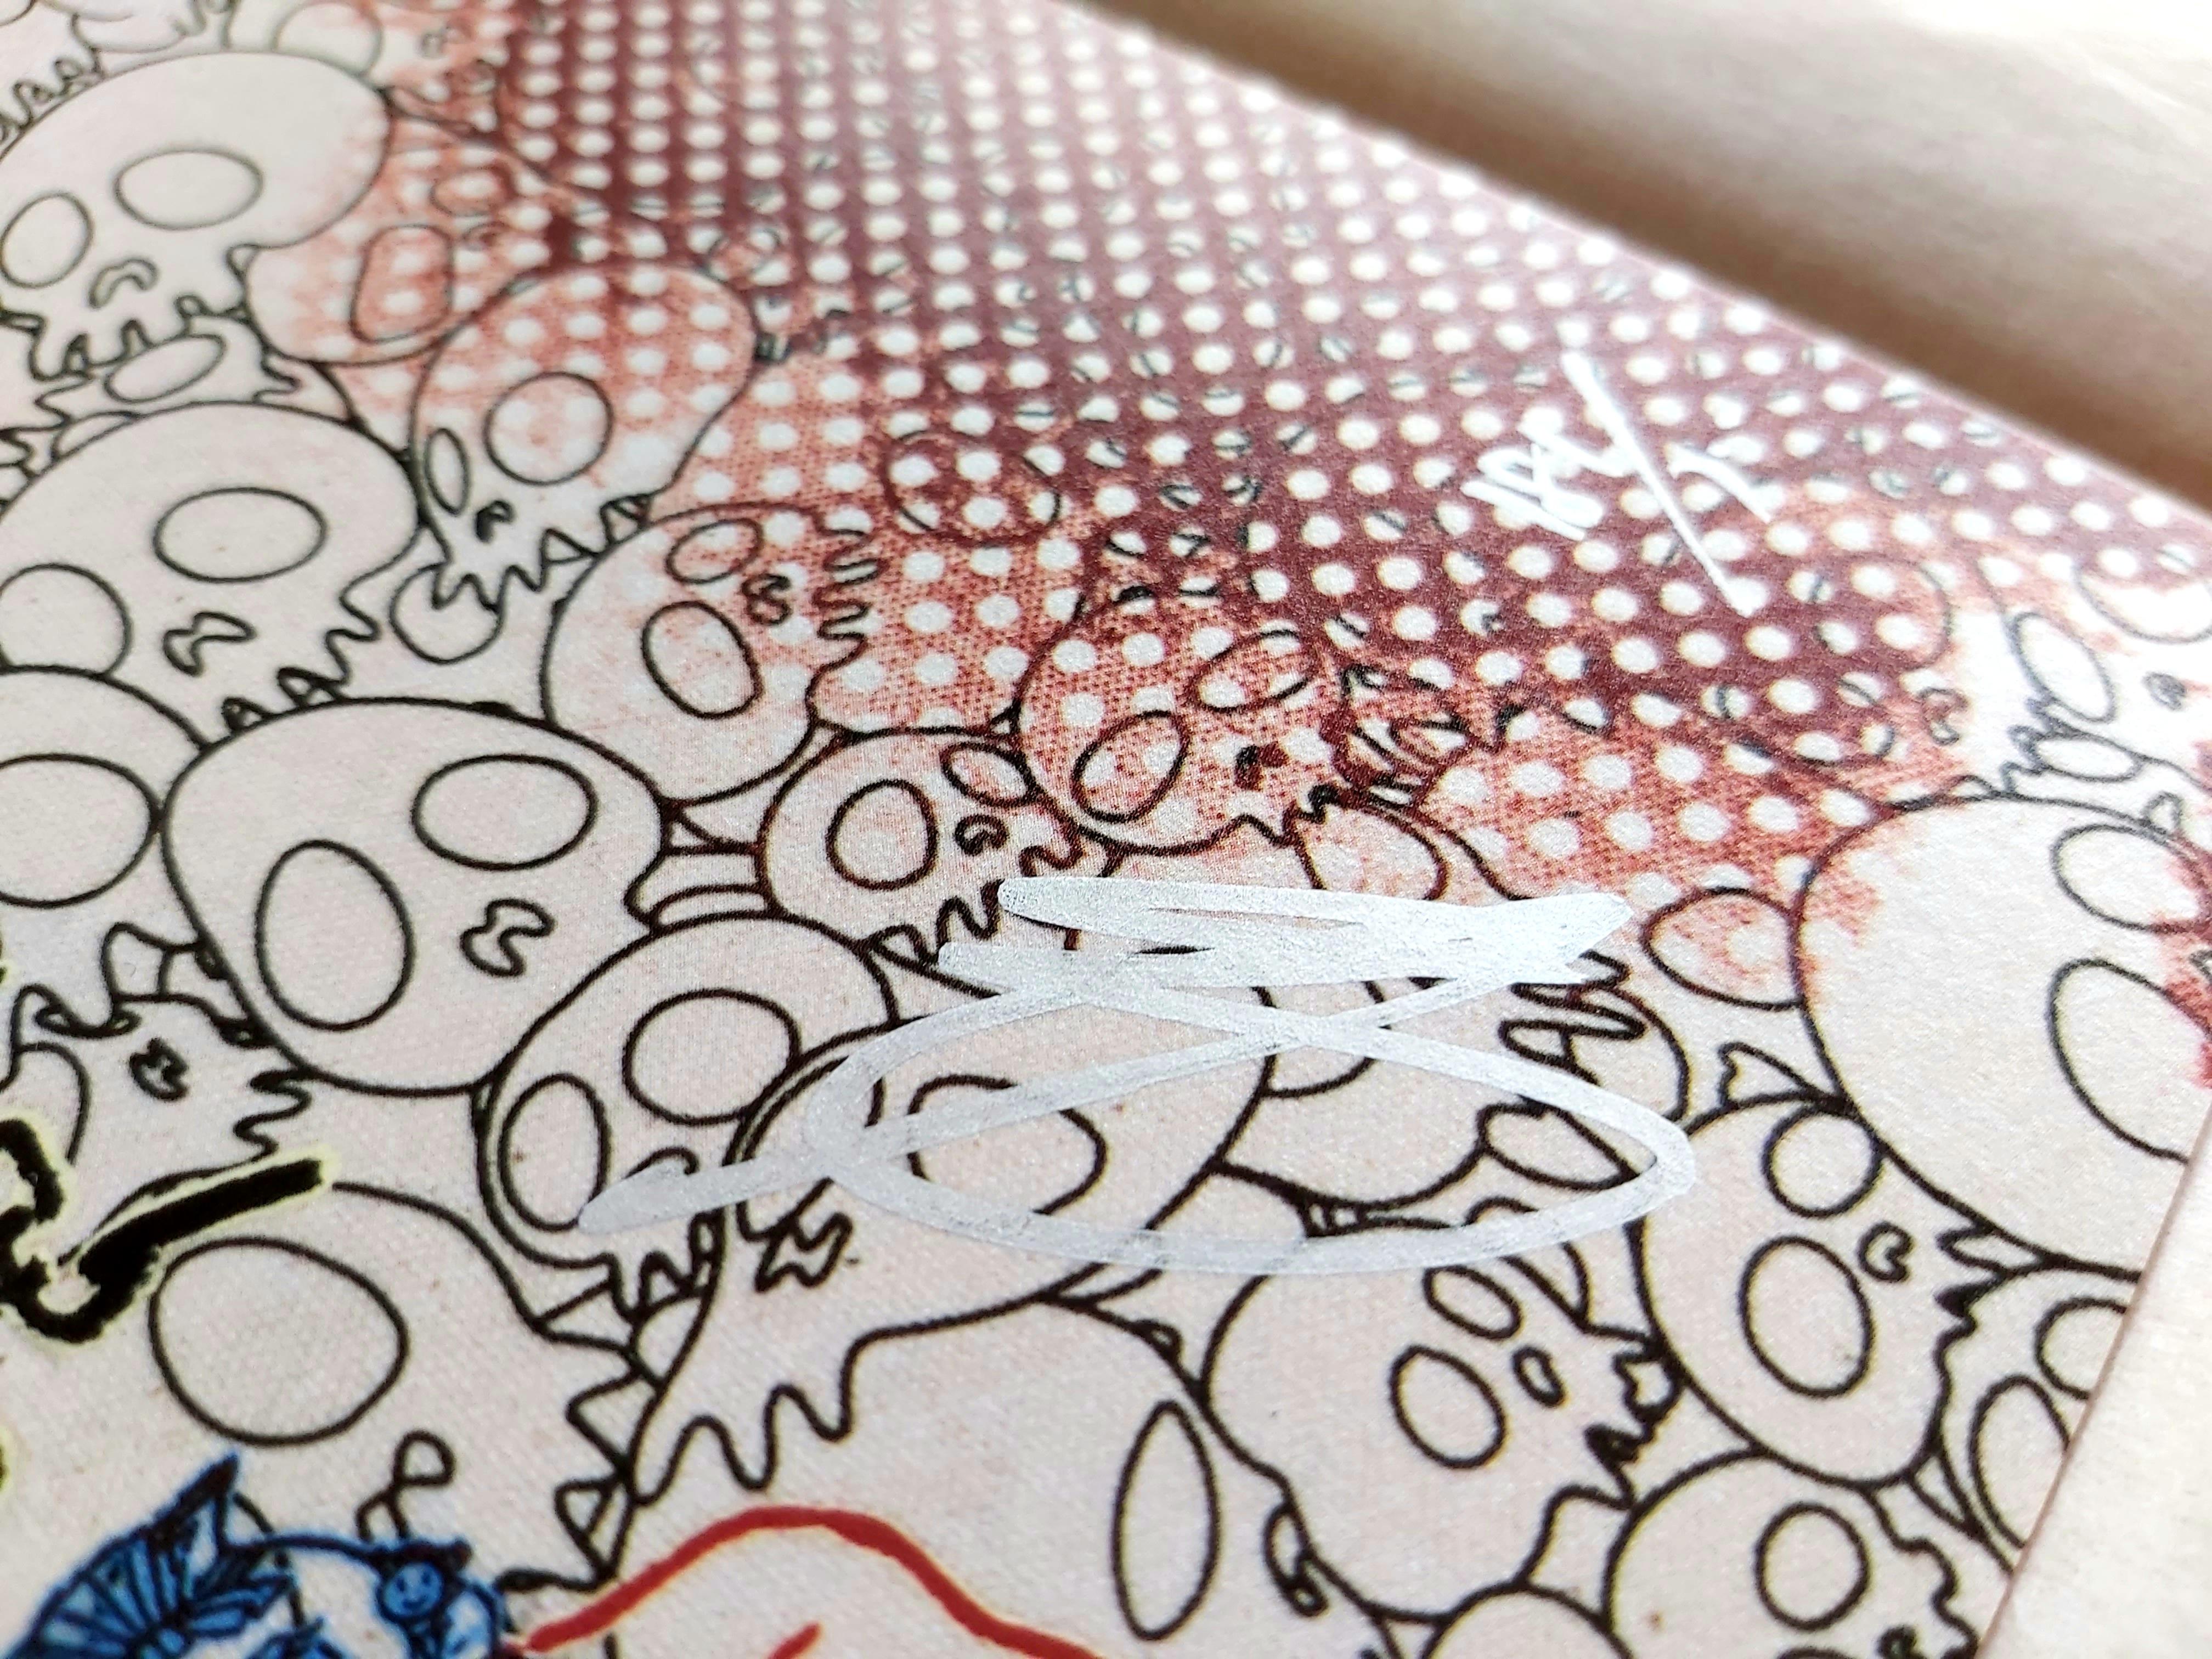 TAKASHI MURAKAMI: Panda Family and Me Hand signed & numbered. Superflat, Pop Art - Gray Figurative Print by Takashi Murakami